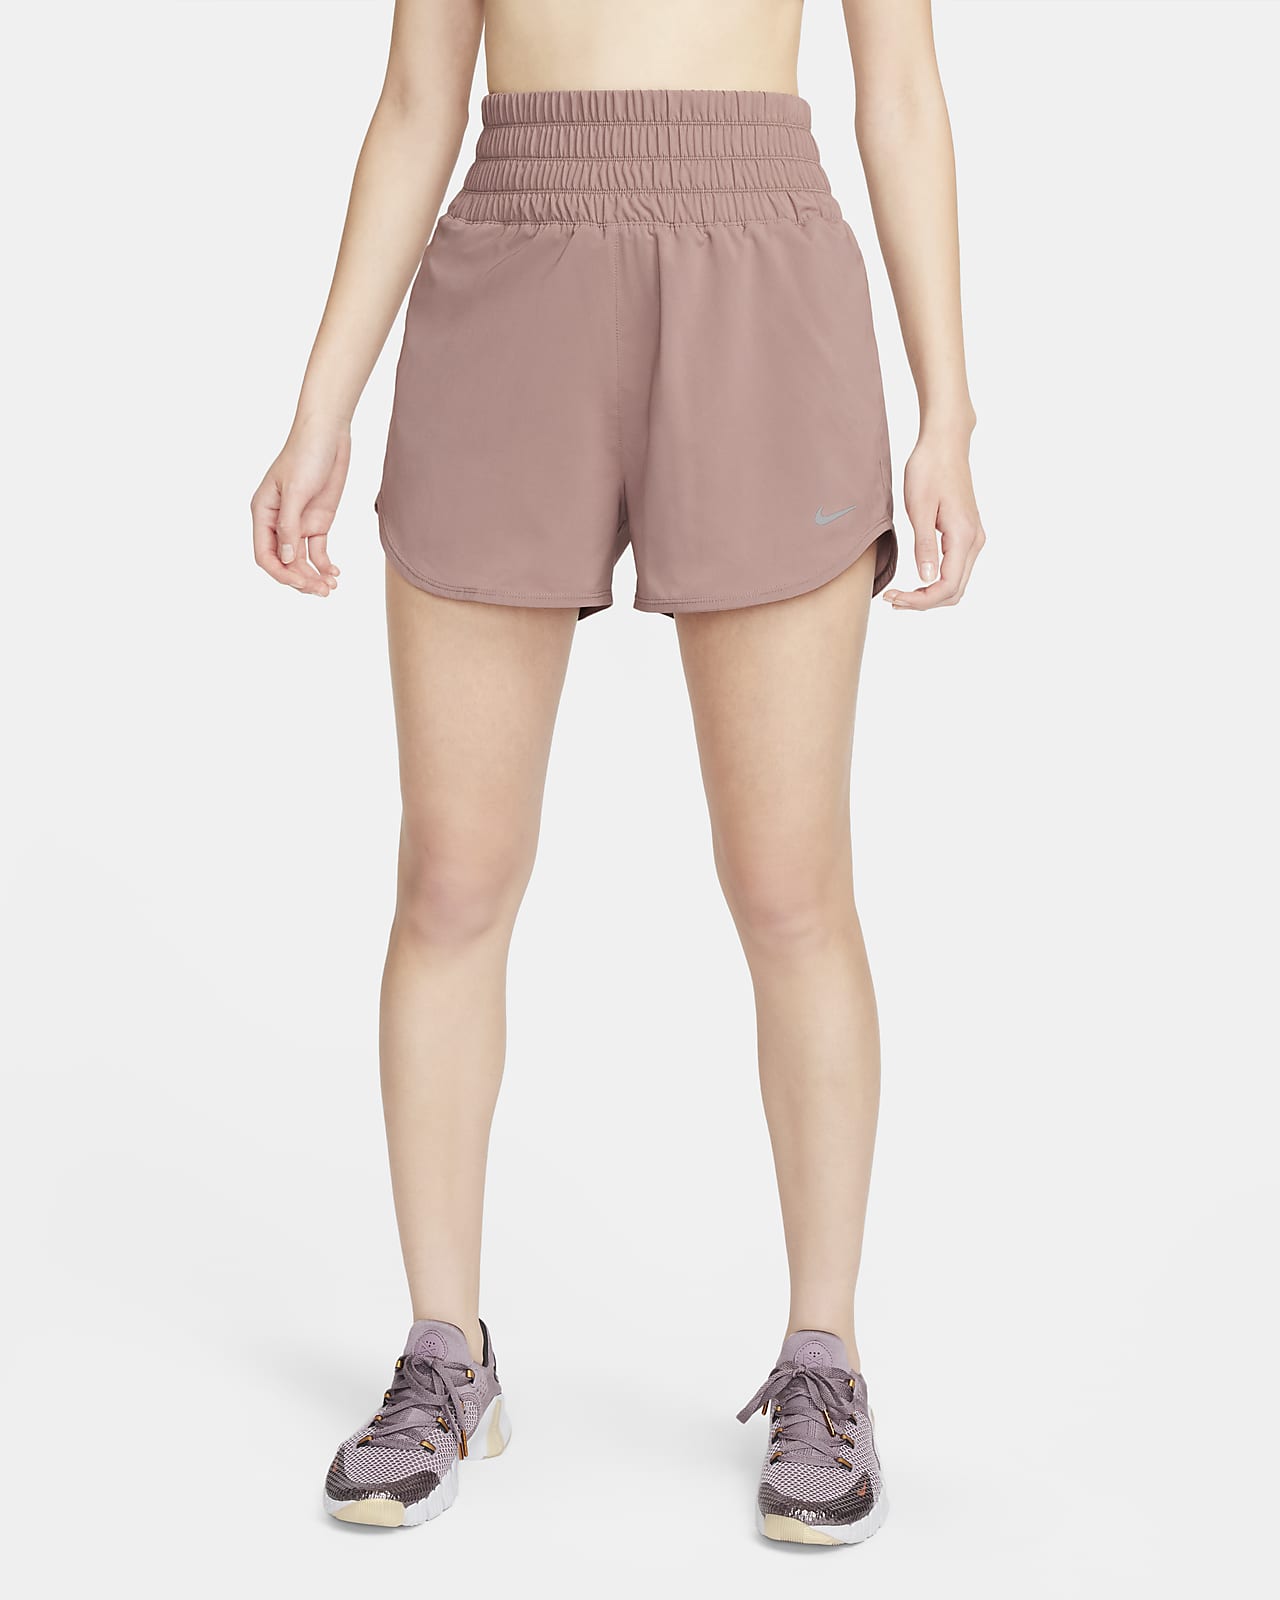 Nike One Dri-FIT Shorts mit Futter und besonders hohem Taillenbund für Damen (ca. 7,5 cm)